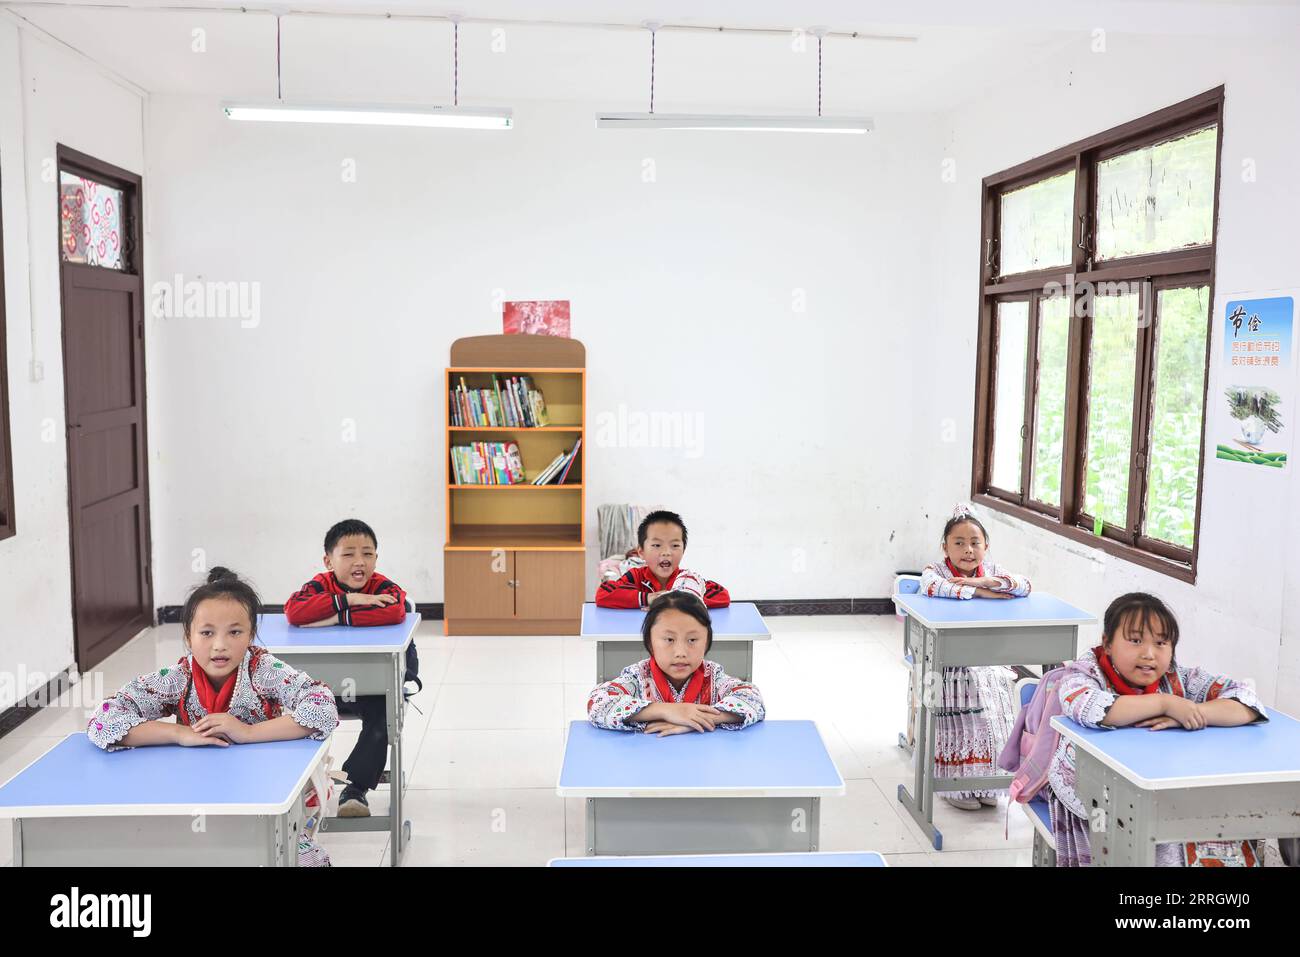 220601 -- GUIZHOU, le 1 juin 2022 -- Yang Yameng 1st L assiste à un cours avec ses camarades de classe dans une école primaire du village de Huawu, dans le canton de Xinren Miao, ville de Qianxi, province du Guizhou, dans le sud-ouest de la Chine, le 1 juin 2022. Yang Yameng est un élève vivant dans le village de Huawu, dans la province du Guizhou du sud-ouest de la Chine. Sa ville natale était autrefois un village extrêmement pauvre. Ces dernières années, grâce à un ensemble de politiques de soutien, la pauvreté a été éliminée dans le village en stimulant les industries de culture et d’élevage ainsi que la promotion du tourisme, et les villageois ont déjà accès aux routes et à l’approvisionnement en eau Banque D'Images